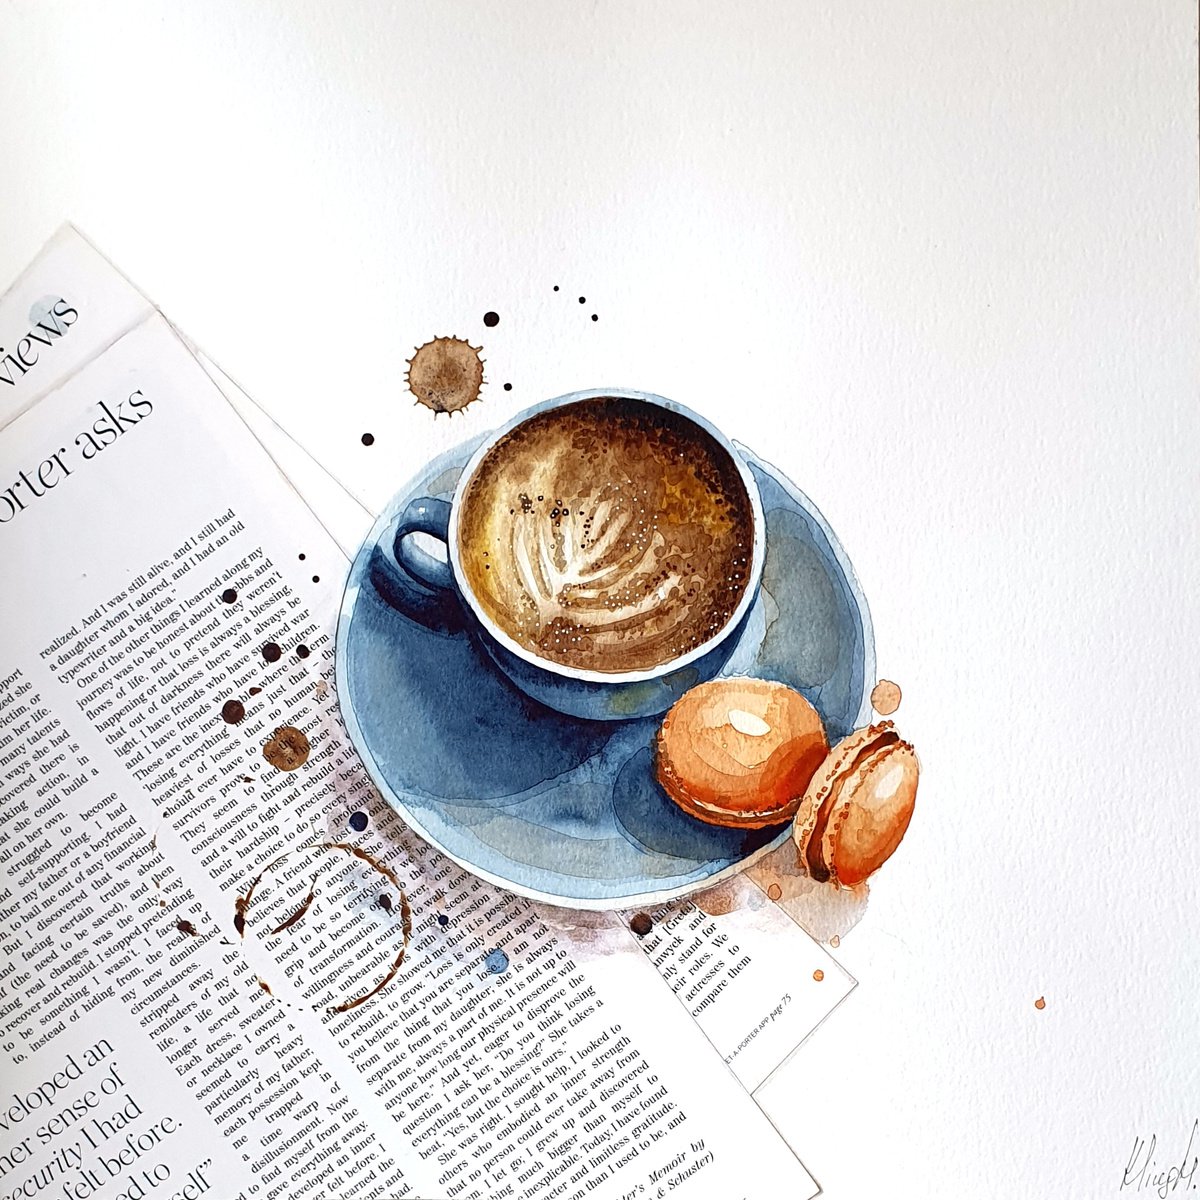 Coffee break by Marina Kliug